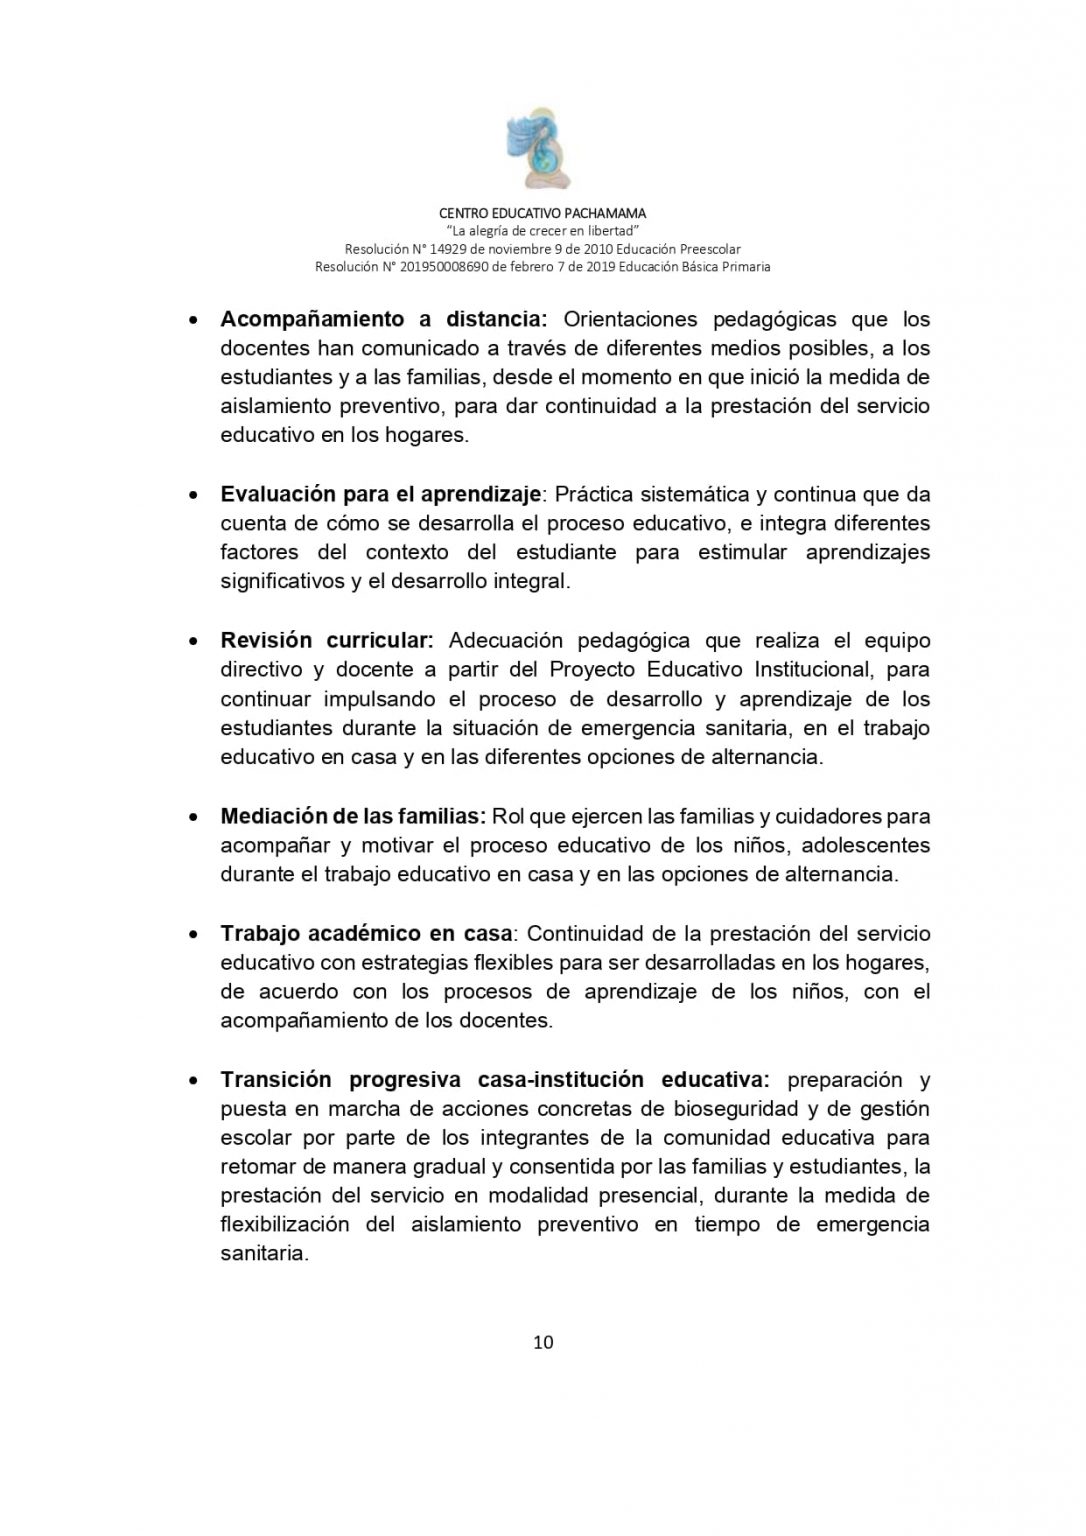 PROTOCOLO DE BIOSEGURIDAD PACHAMAMA Última Versión (3)-convertido_page-0010